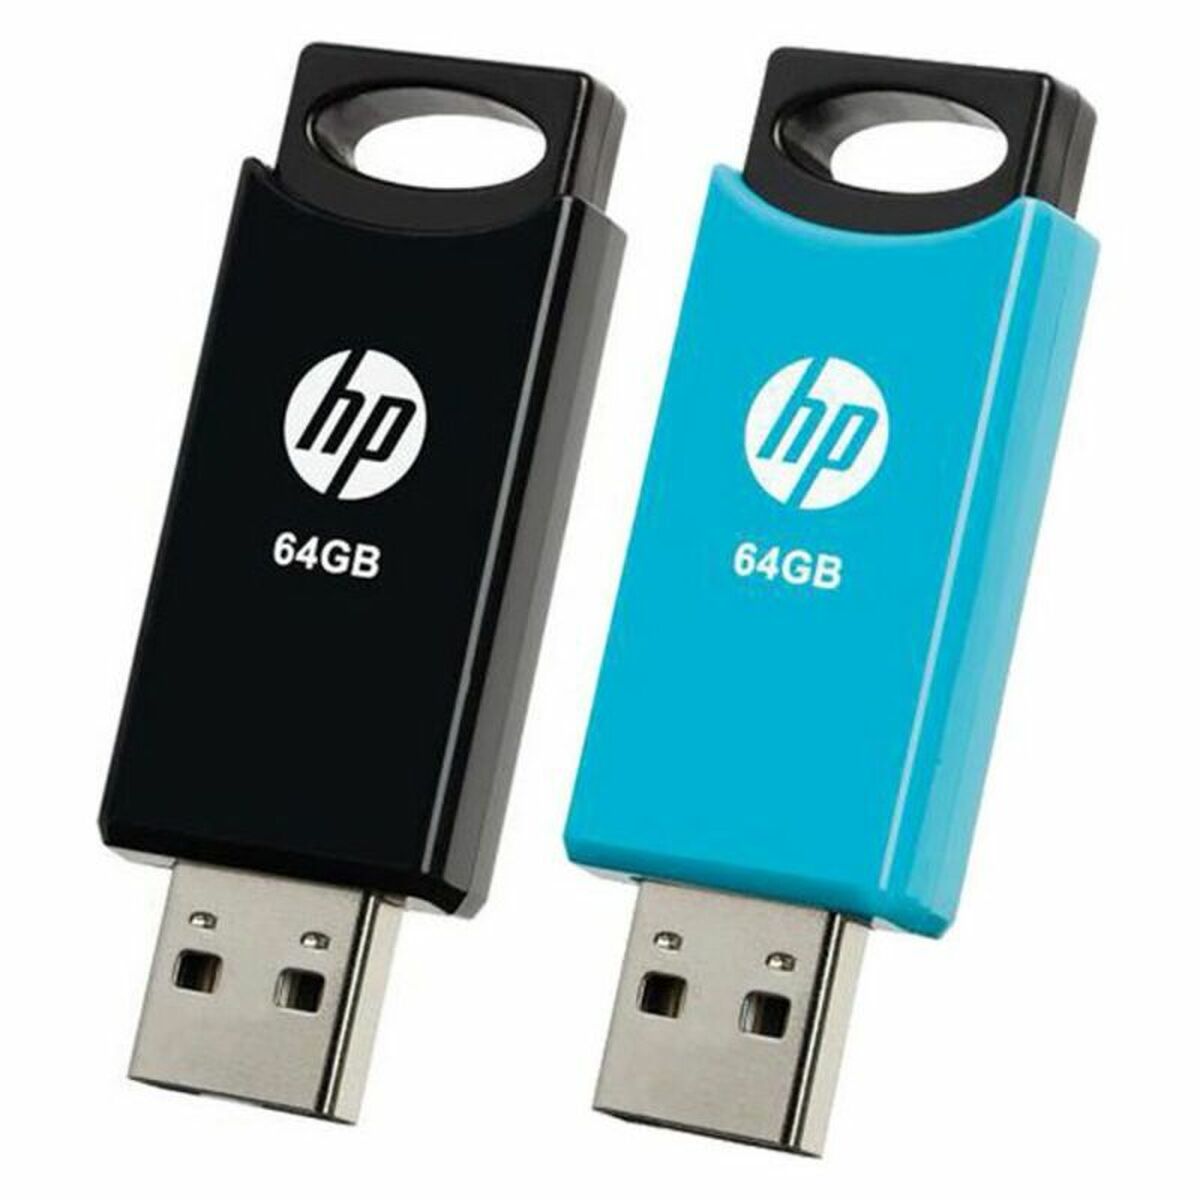 USB stick HP 212 USB 2.0 Blue/Black (2 uds) - Generation Gamer